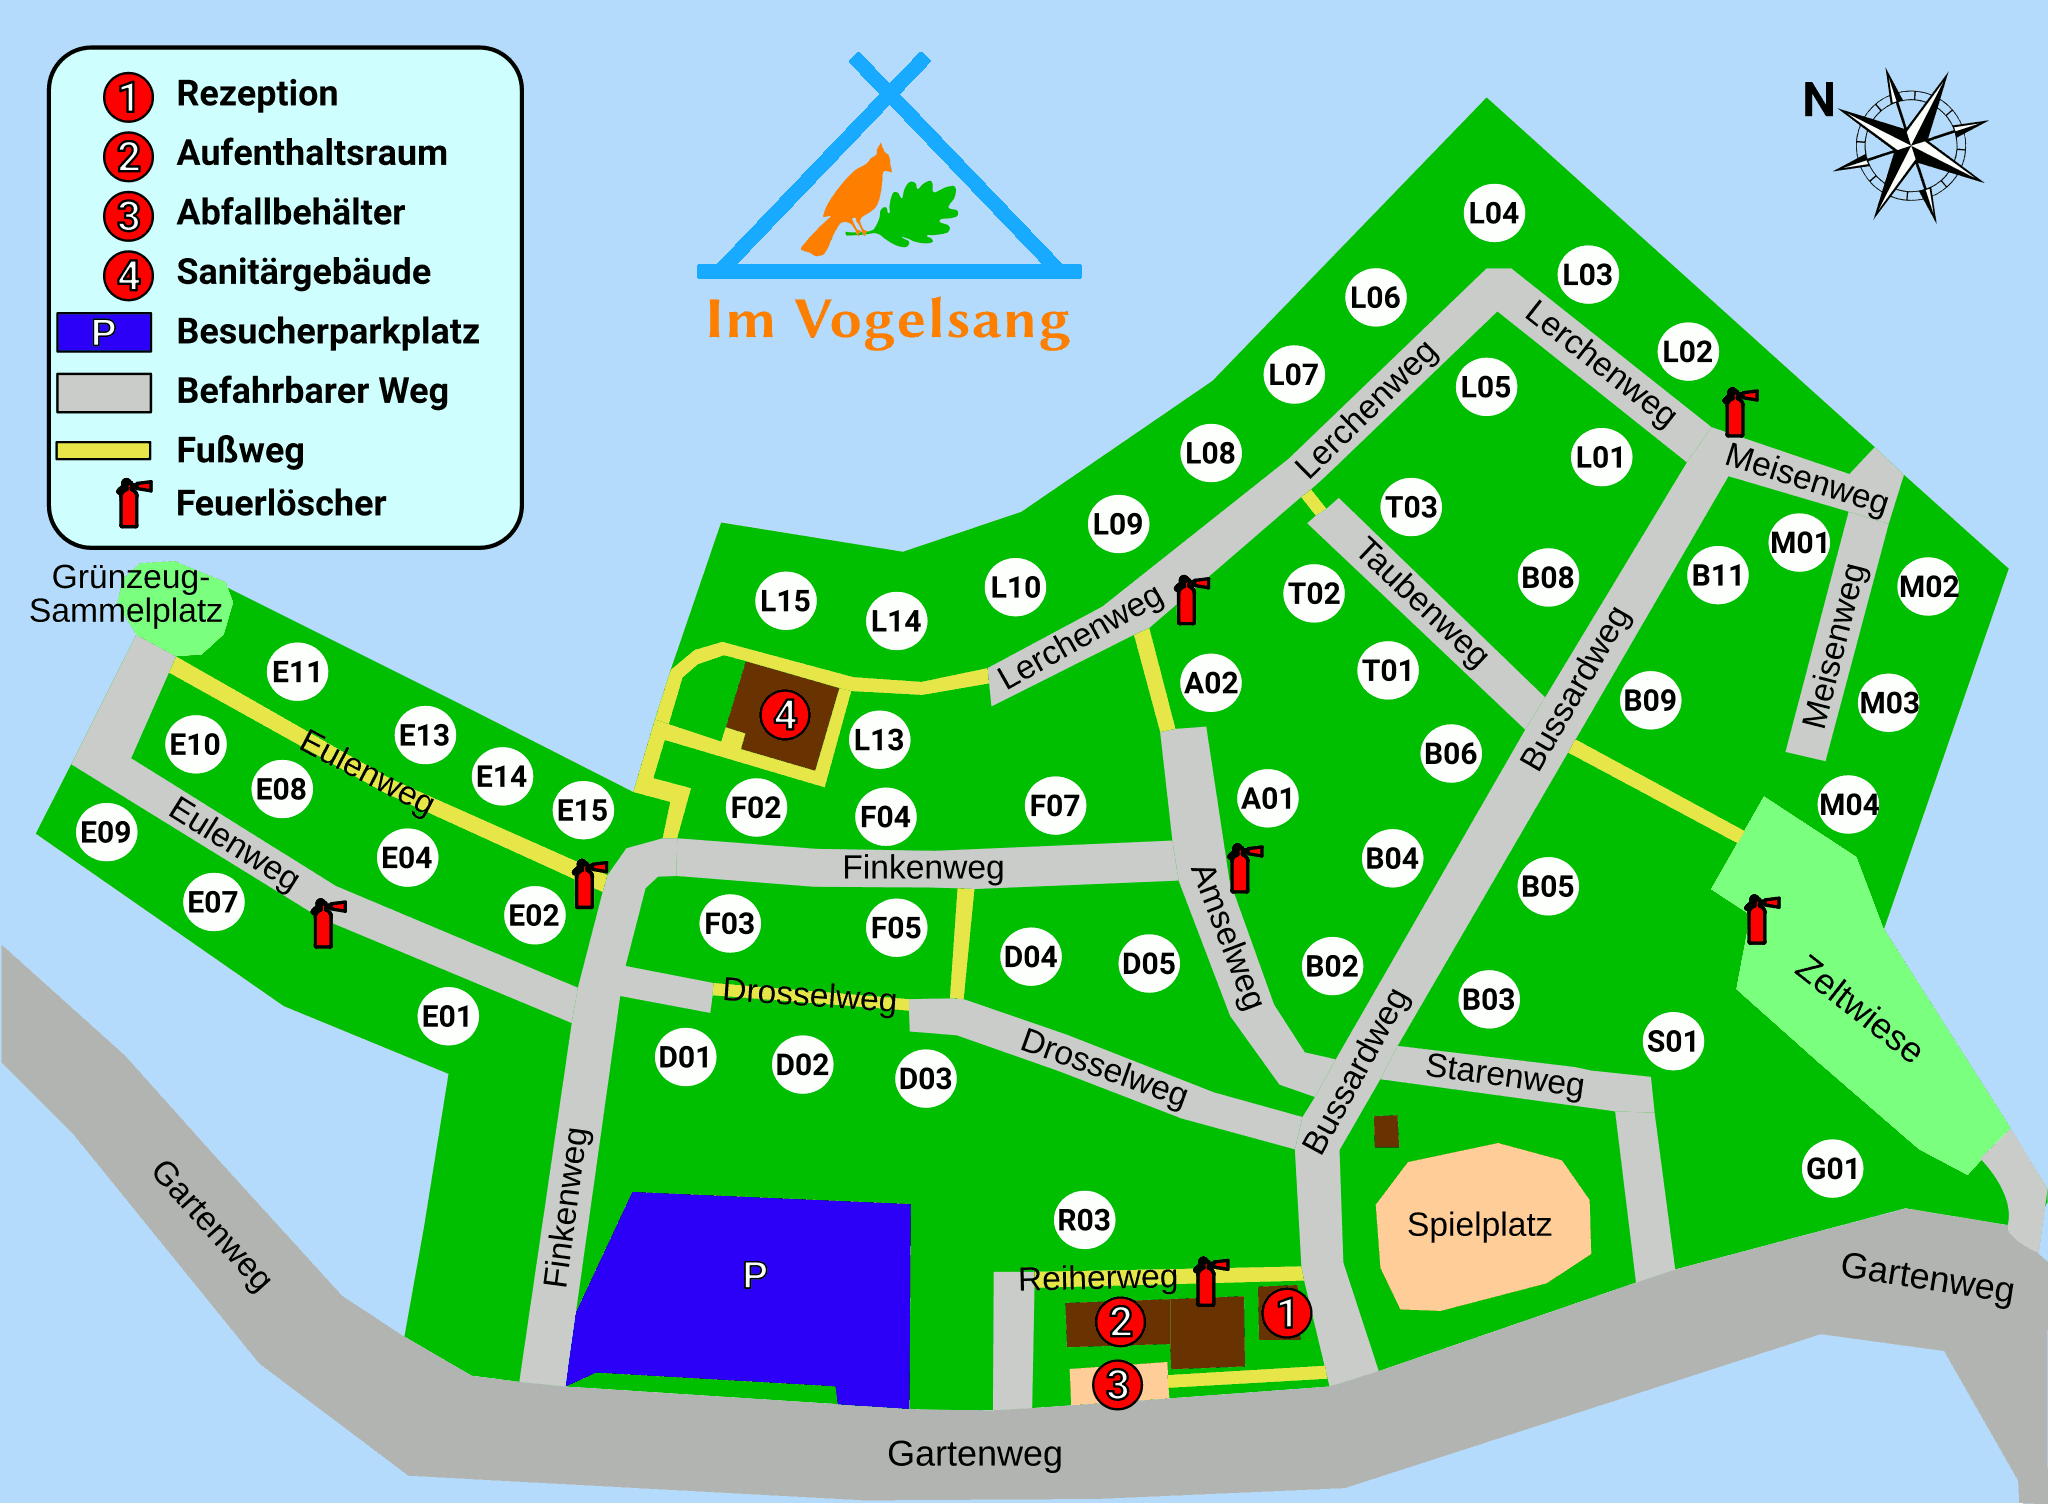 Lageplan des Campingplatzes Im Vogelsang (nicht maßstabsgetreu)